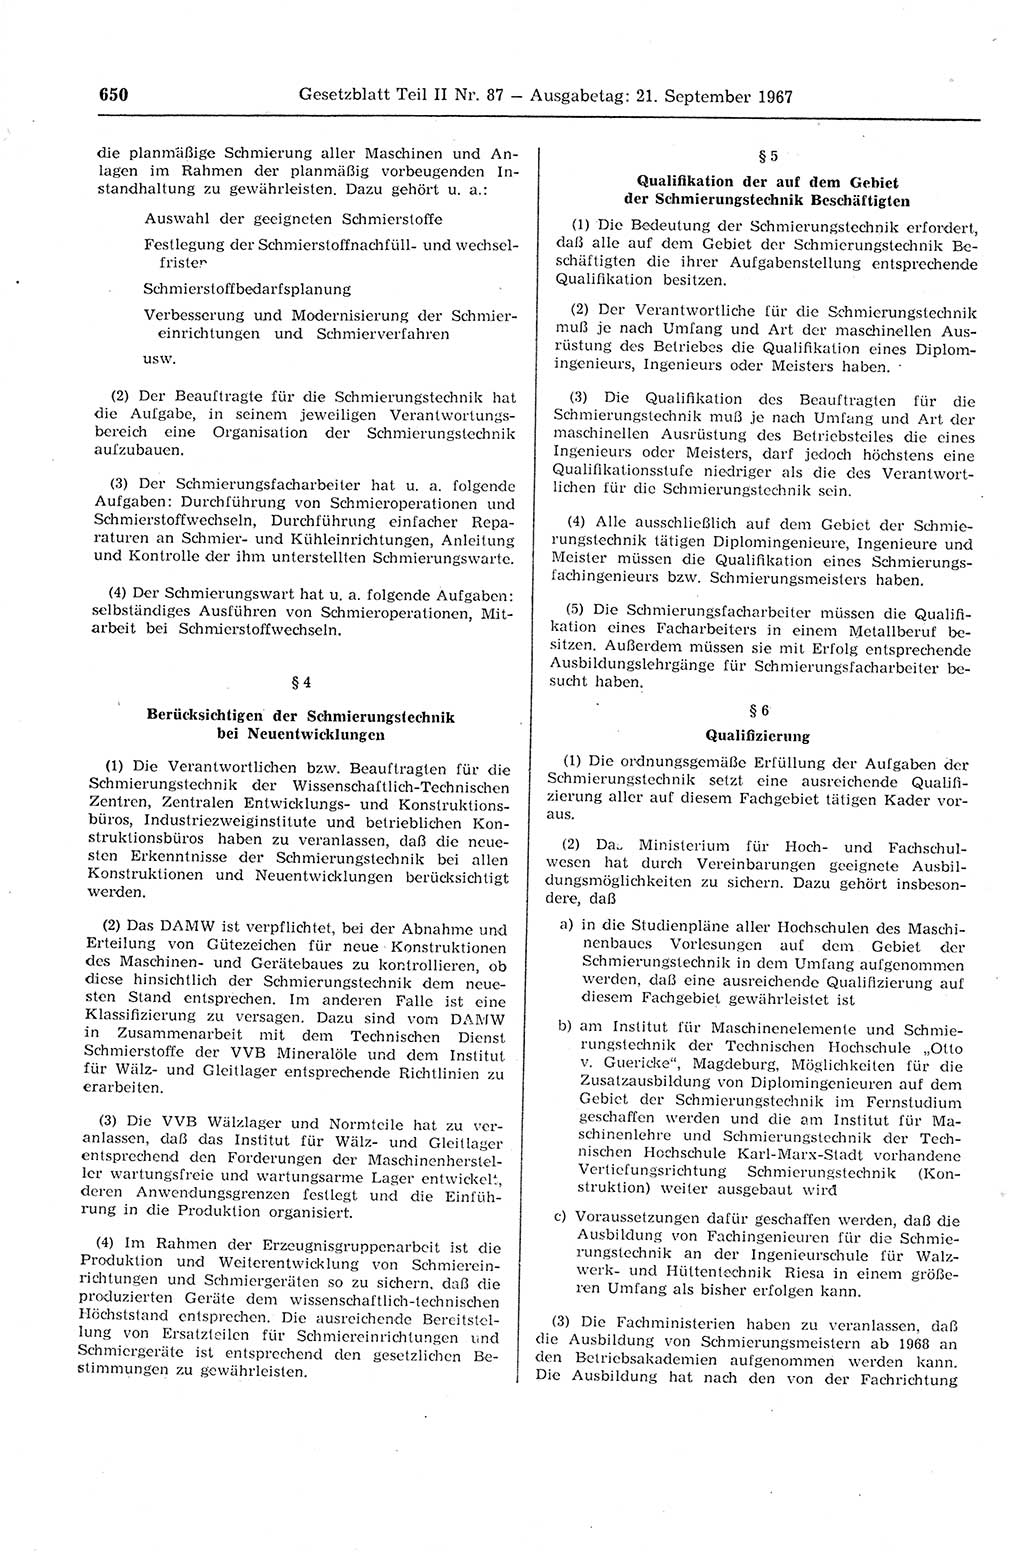 Gesetzblatt (GBl.) der Deutschen Demokratischen Republik (DDR) Teil ⅠⅠ 1967, Seite 650 (GBl. DDR ⅠⅠ 1967, S. 650)